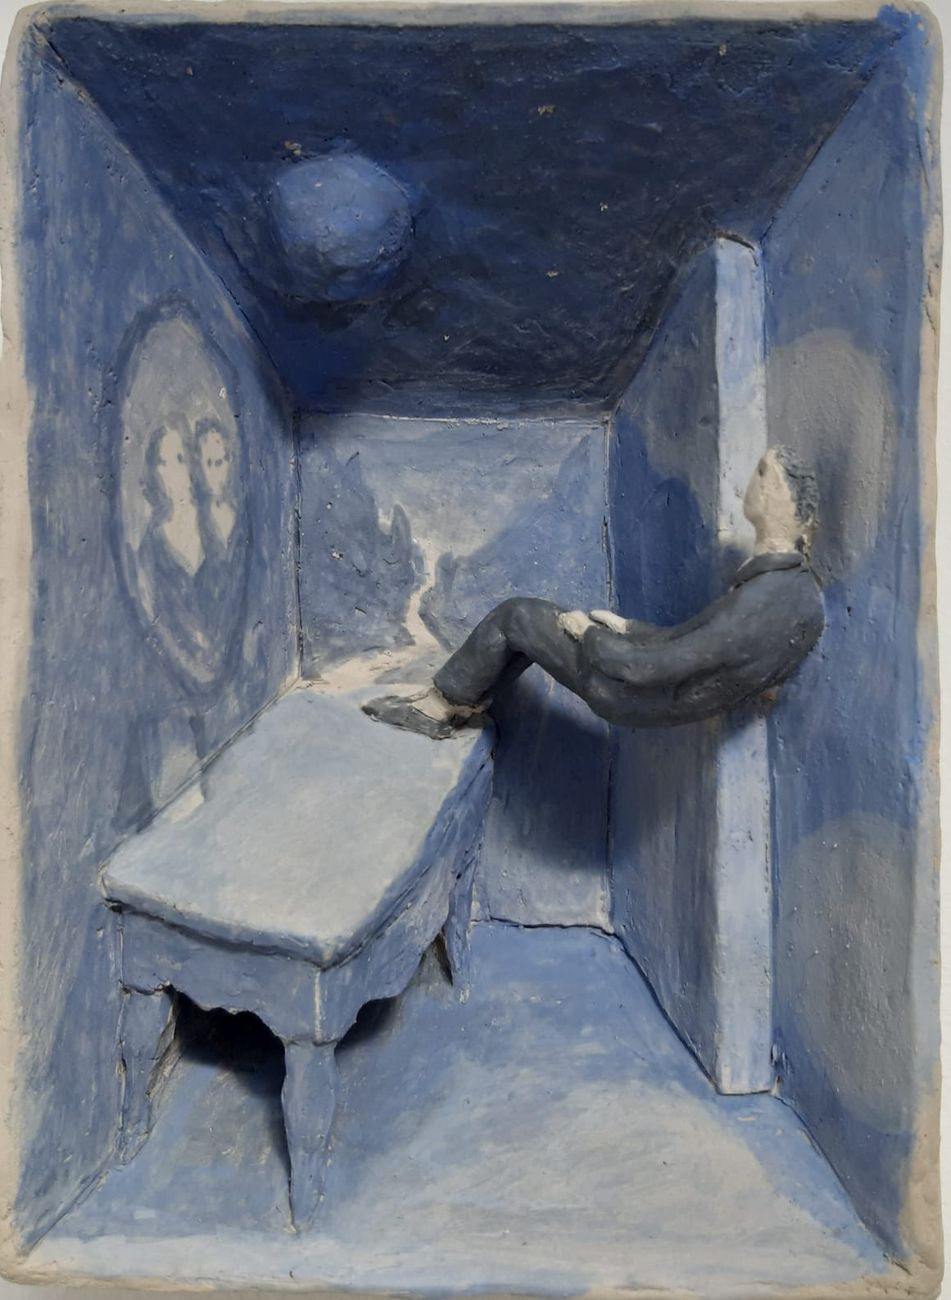 Pino Deodato, Il cielo in una stanza, terracotta a ingobbio, 20 x 25 x 8 cm, 2020